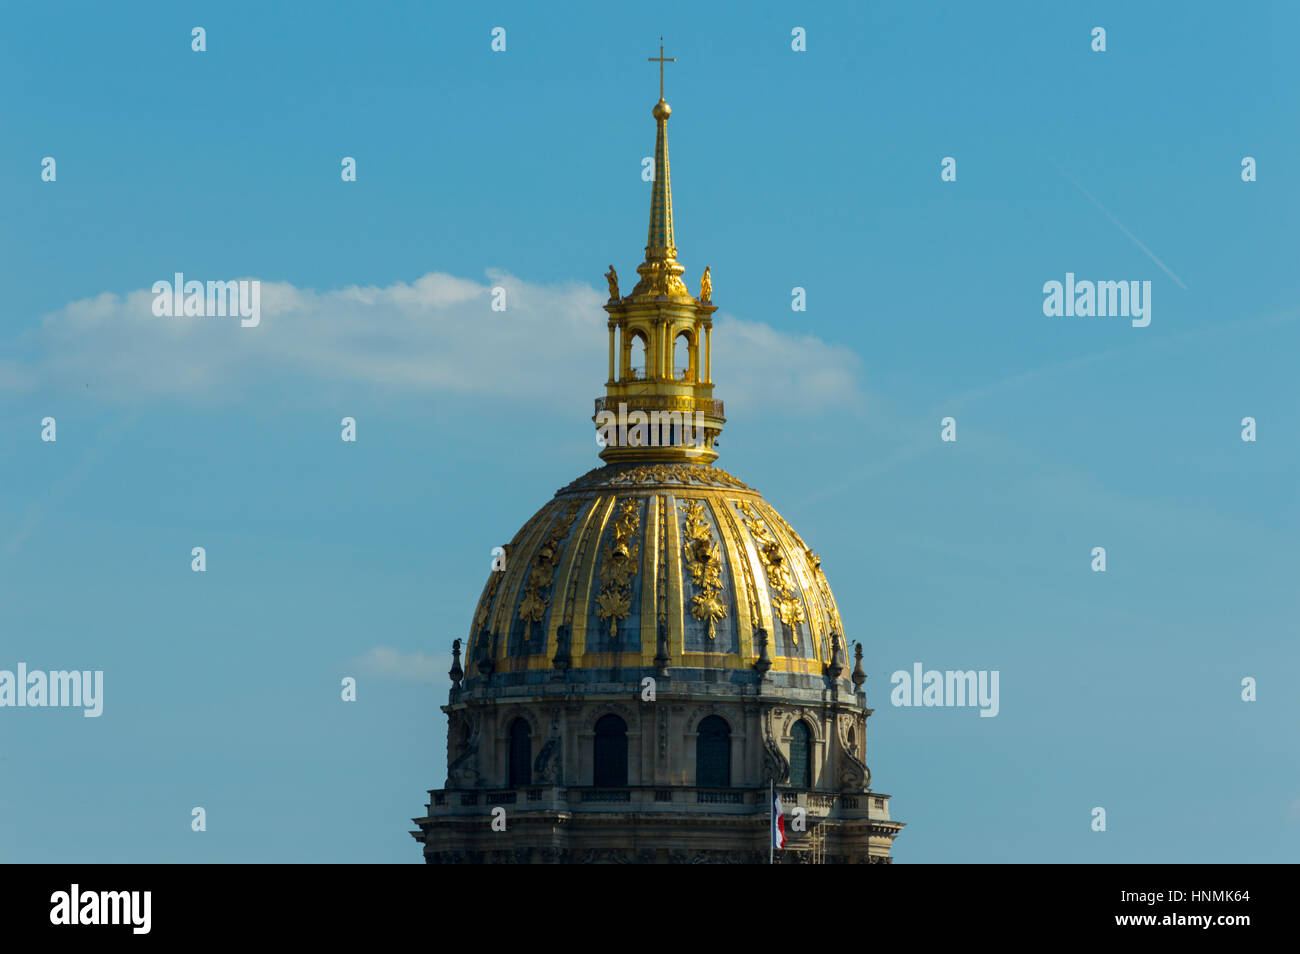 Le dôme doré du dôme des Invalides (les invalides), Paris. un bel exemple de l'architecture baroque française. Banque D'Images